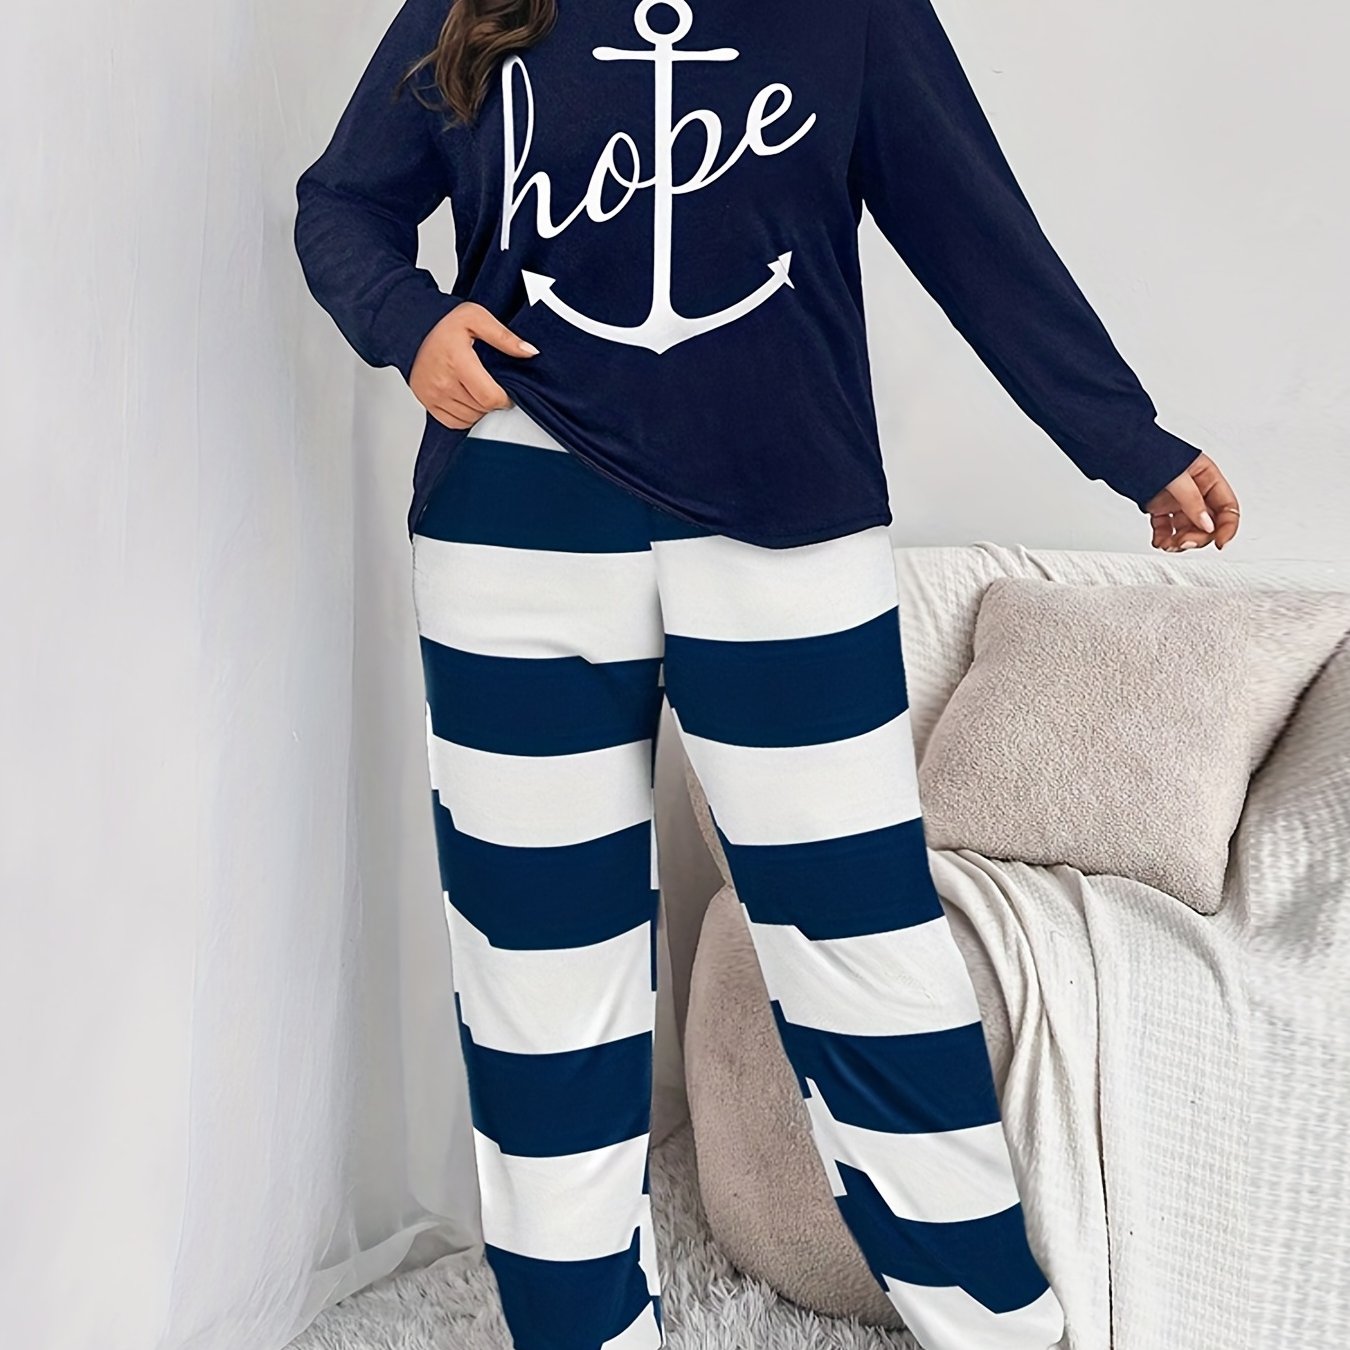 Hope Plus Size Women's Christian Pajamas claimedbygoddesigns